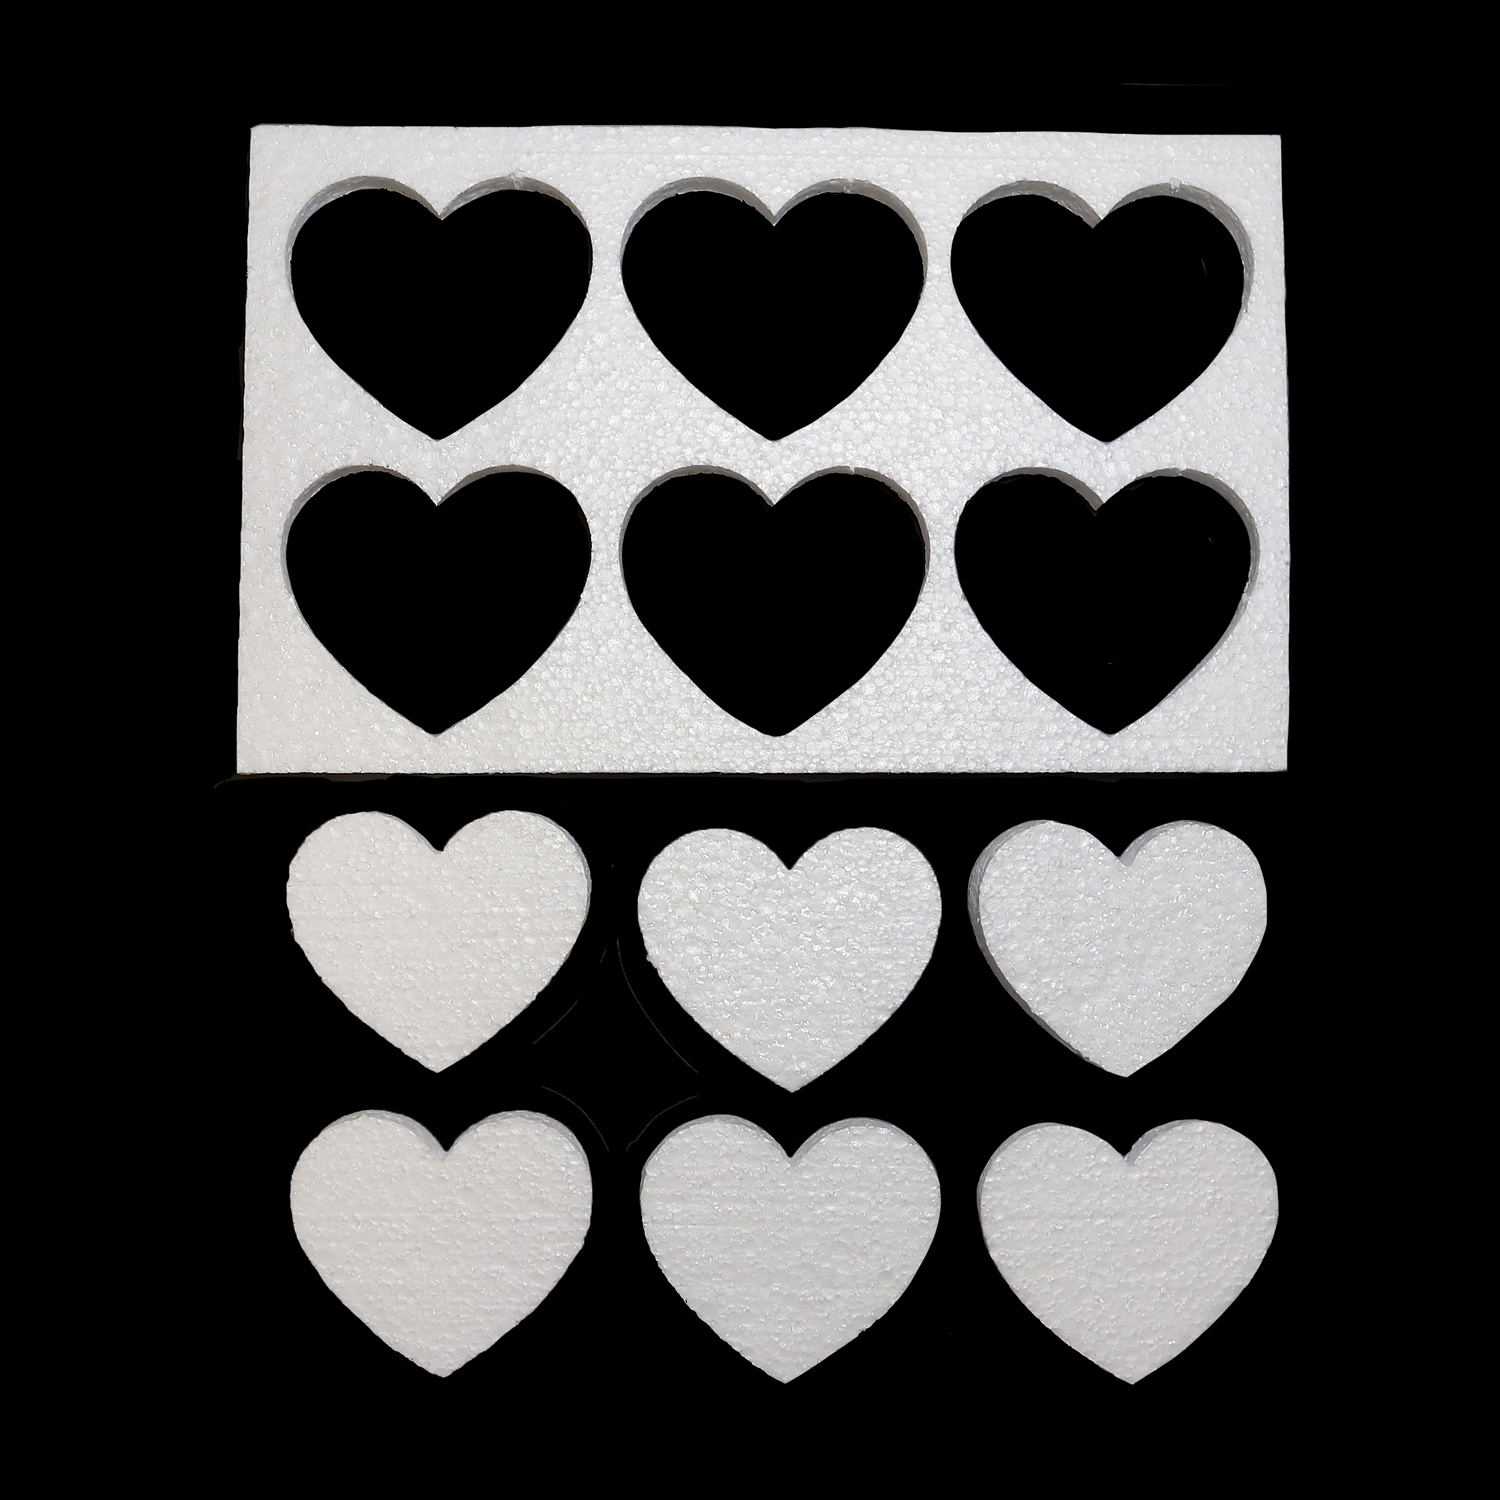 1259-1 Сердце пенопластовое на пластине (6 сердец)  7 см (уп. 5 шт)